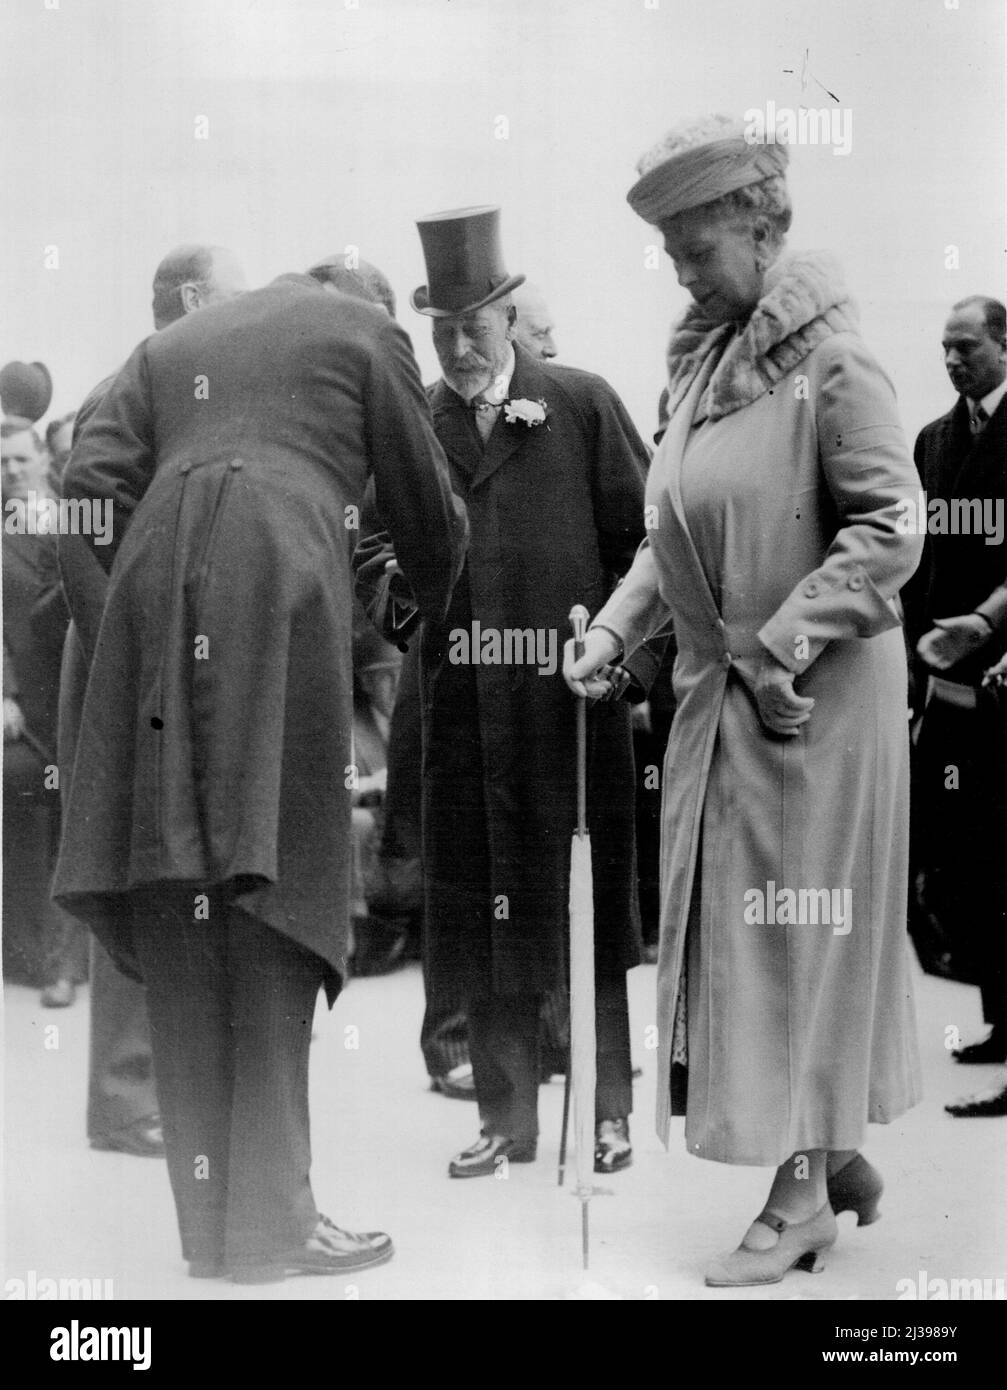 Il re e la regina arrivano a Epsom per il Derby. Il Re e la Regina sono stati ricevuti all'arrivo a Epsom fino ad oggi. Giugno 1, 1932. (Foto dell'agenzia di stampa topica Ltd.). Foto Stock